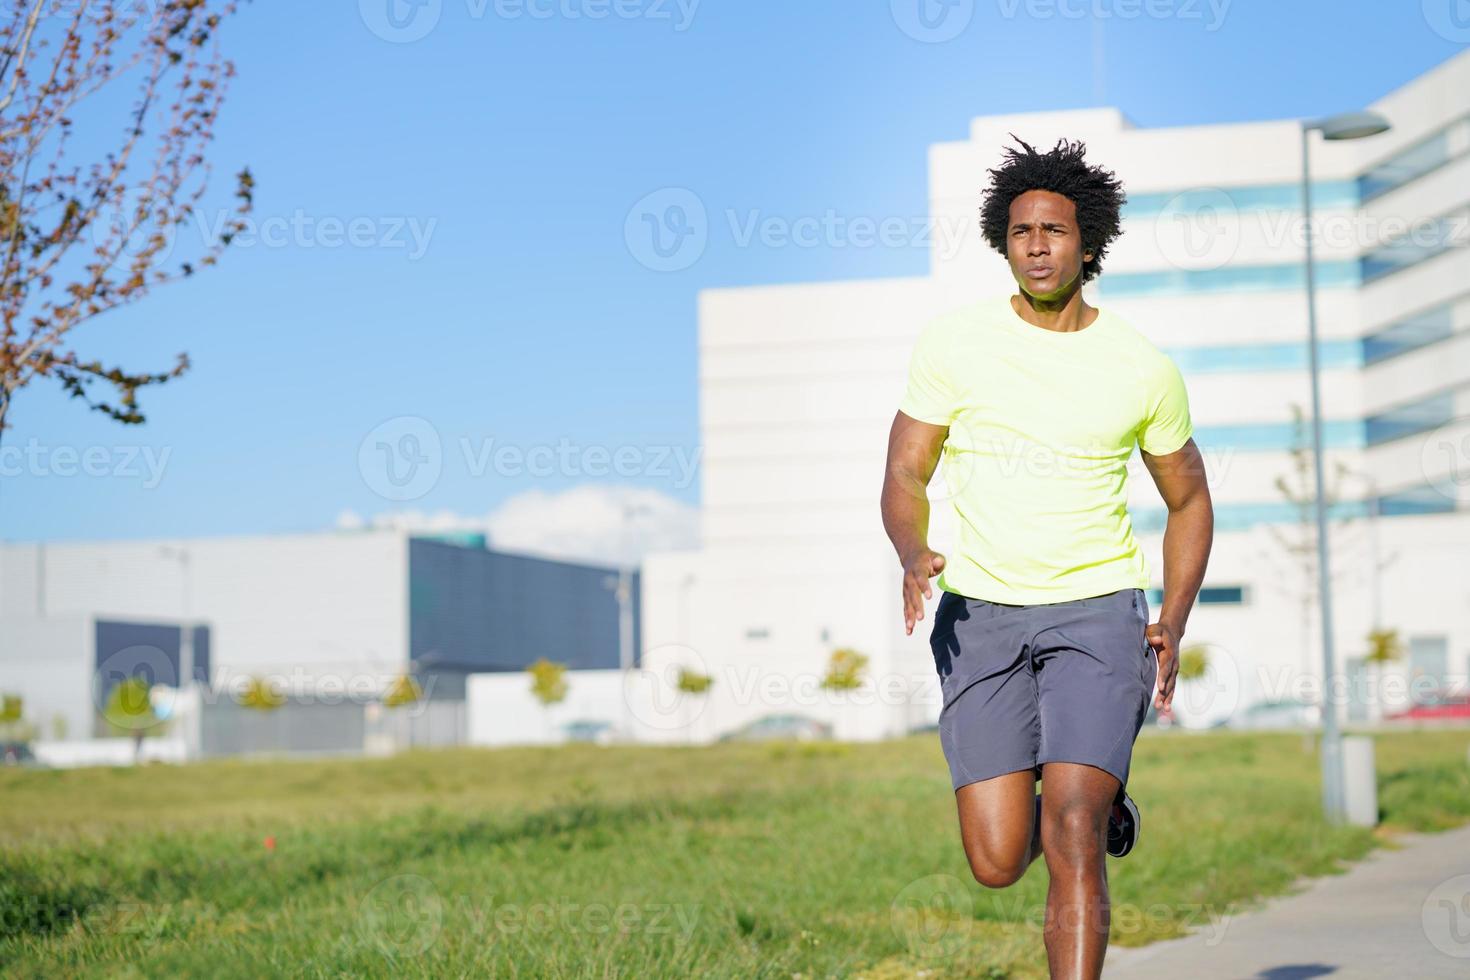 homem negro atlético correndo em um parque urbano. foto